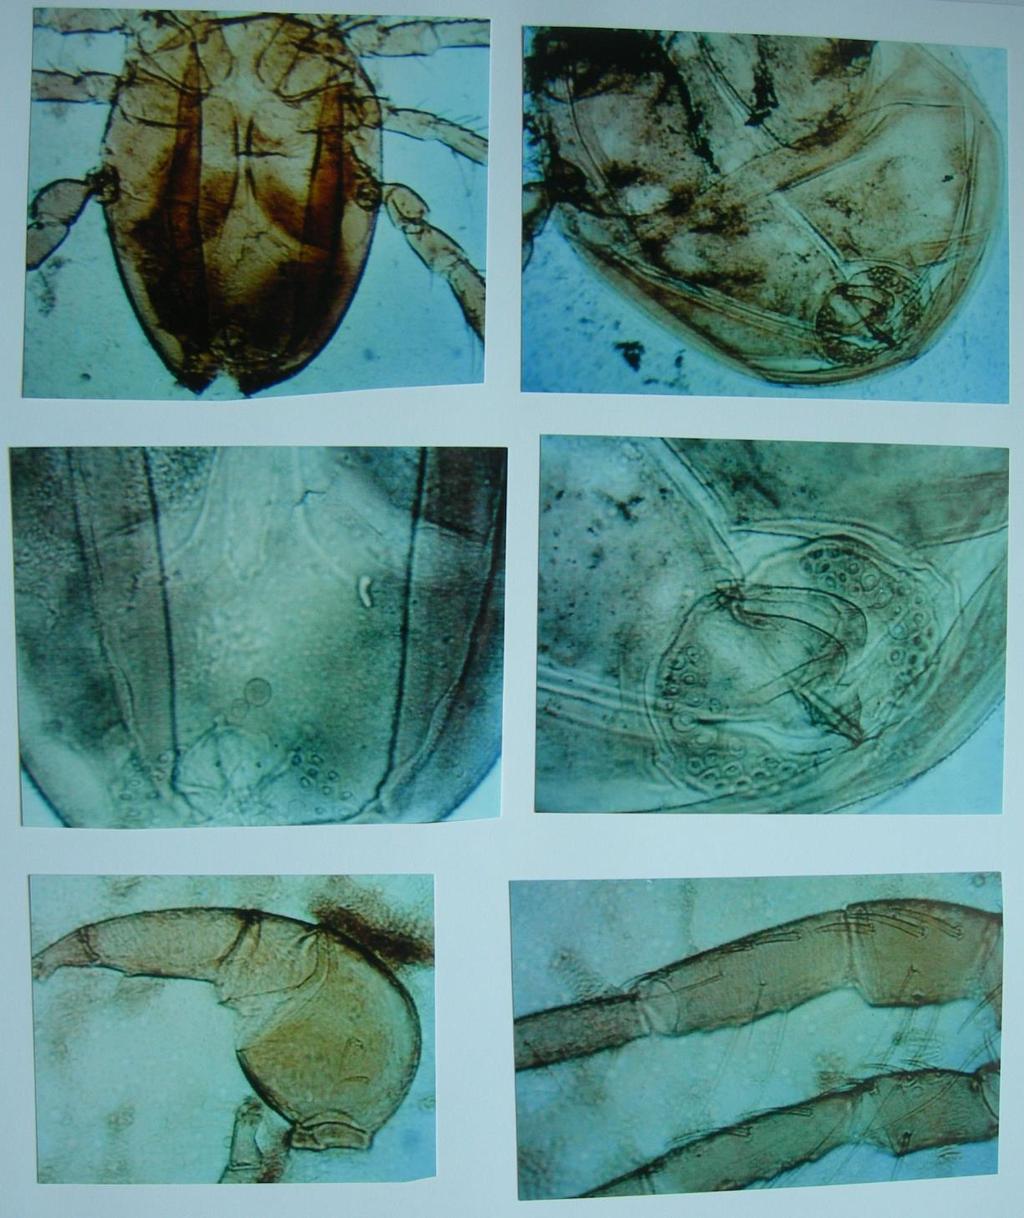 Plate 184: Unionicola formosa from Pyganodon cataracta in North Carolina: Top left: male venter. Top right: female venter.